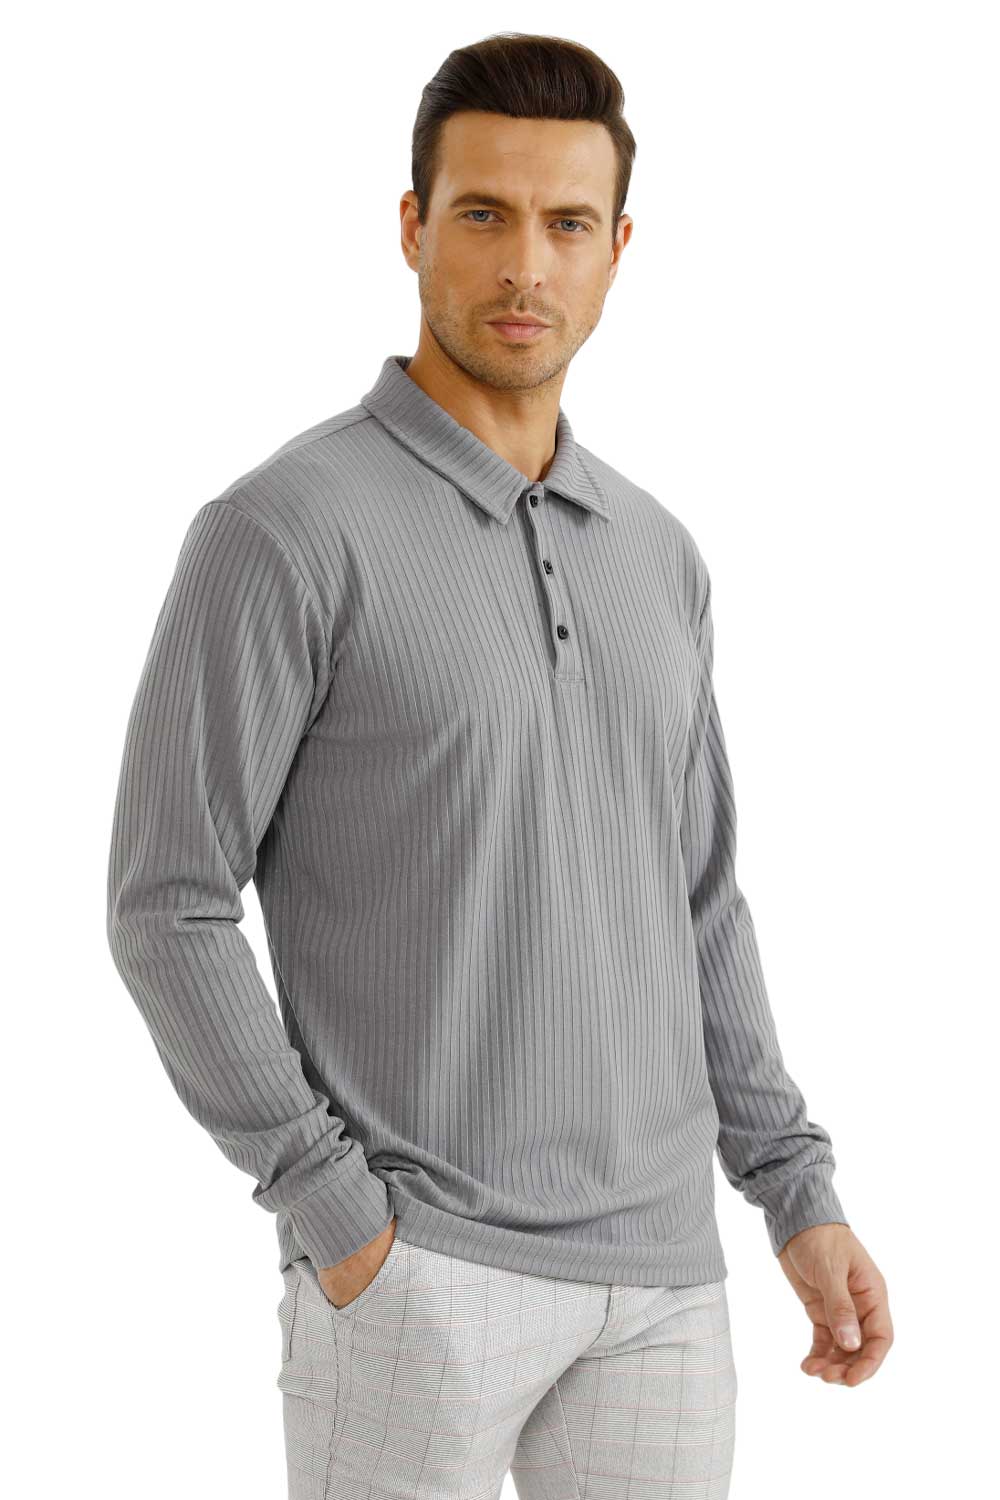 men's grey long sleeve polo shirt